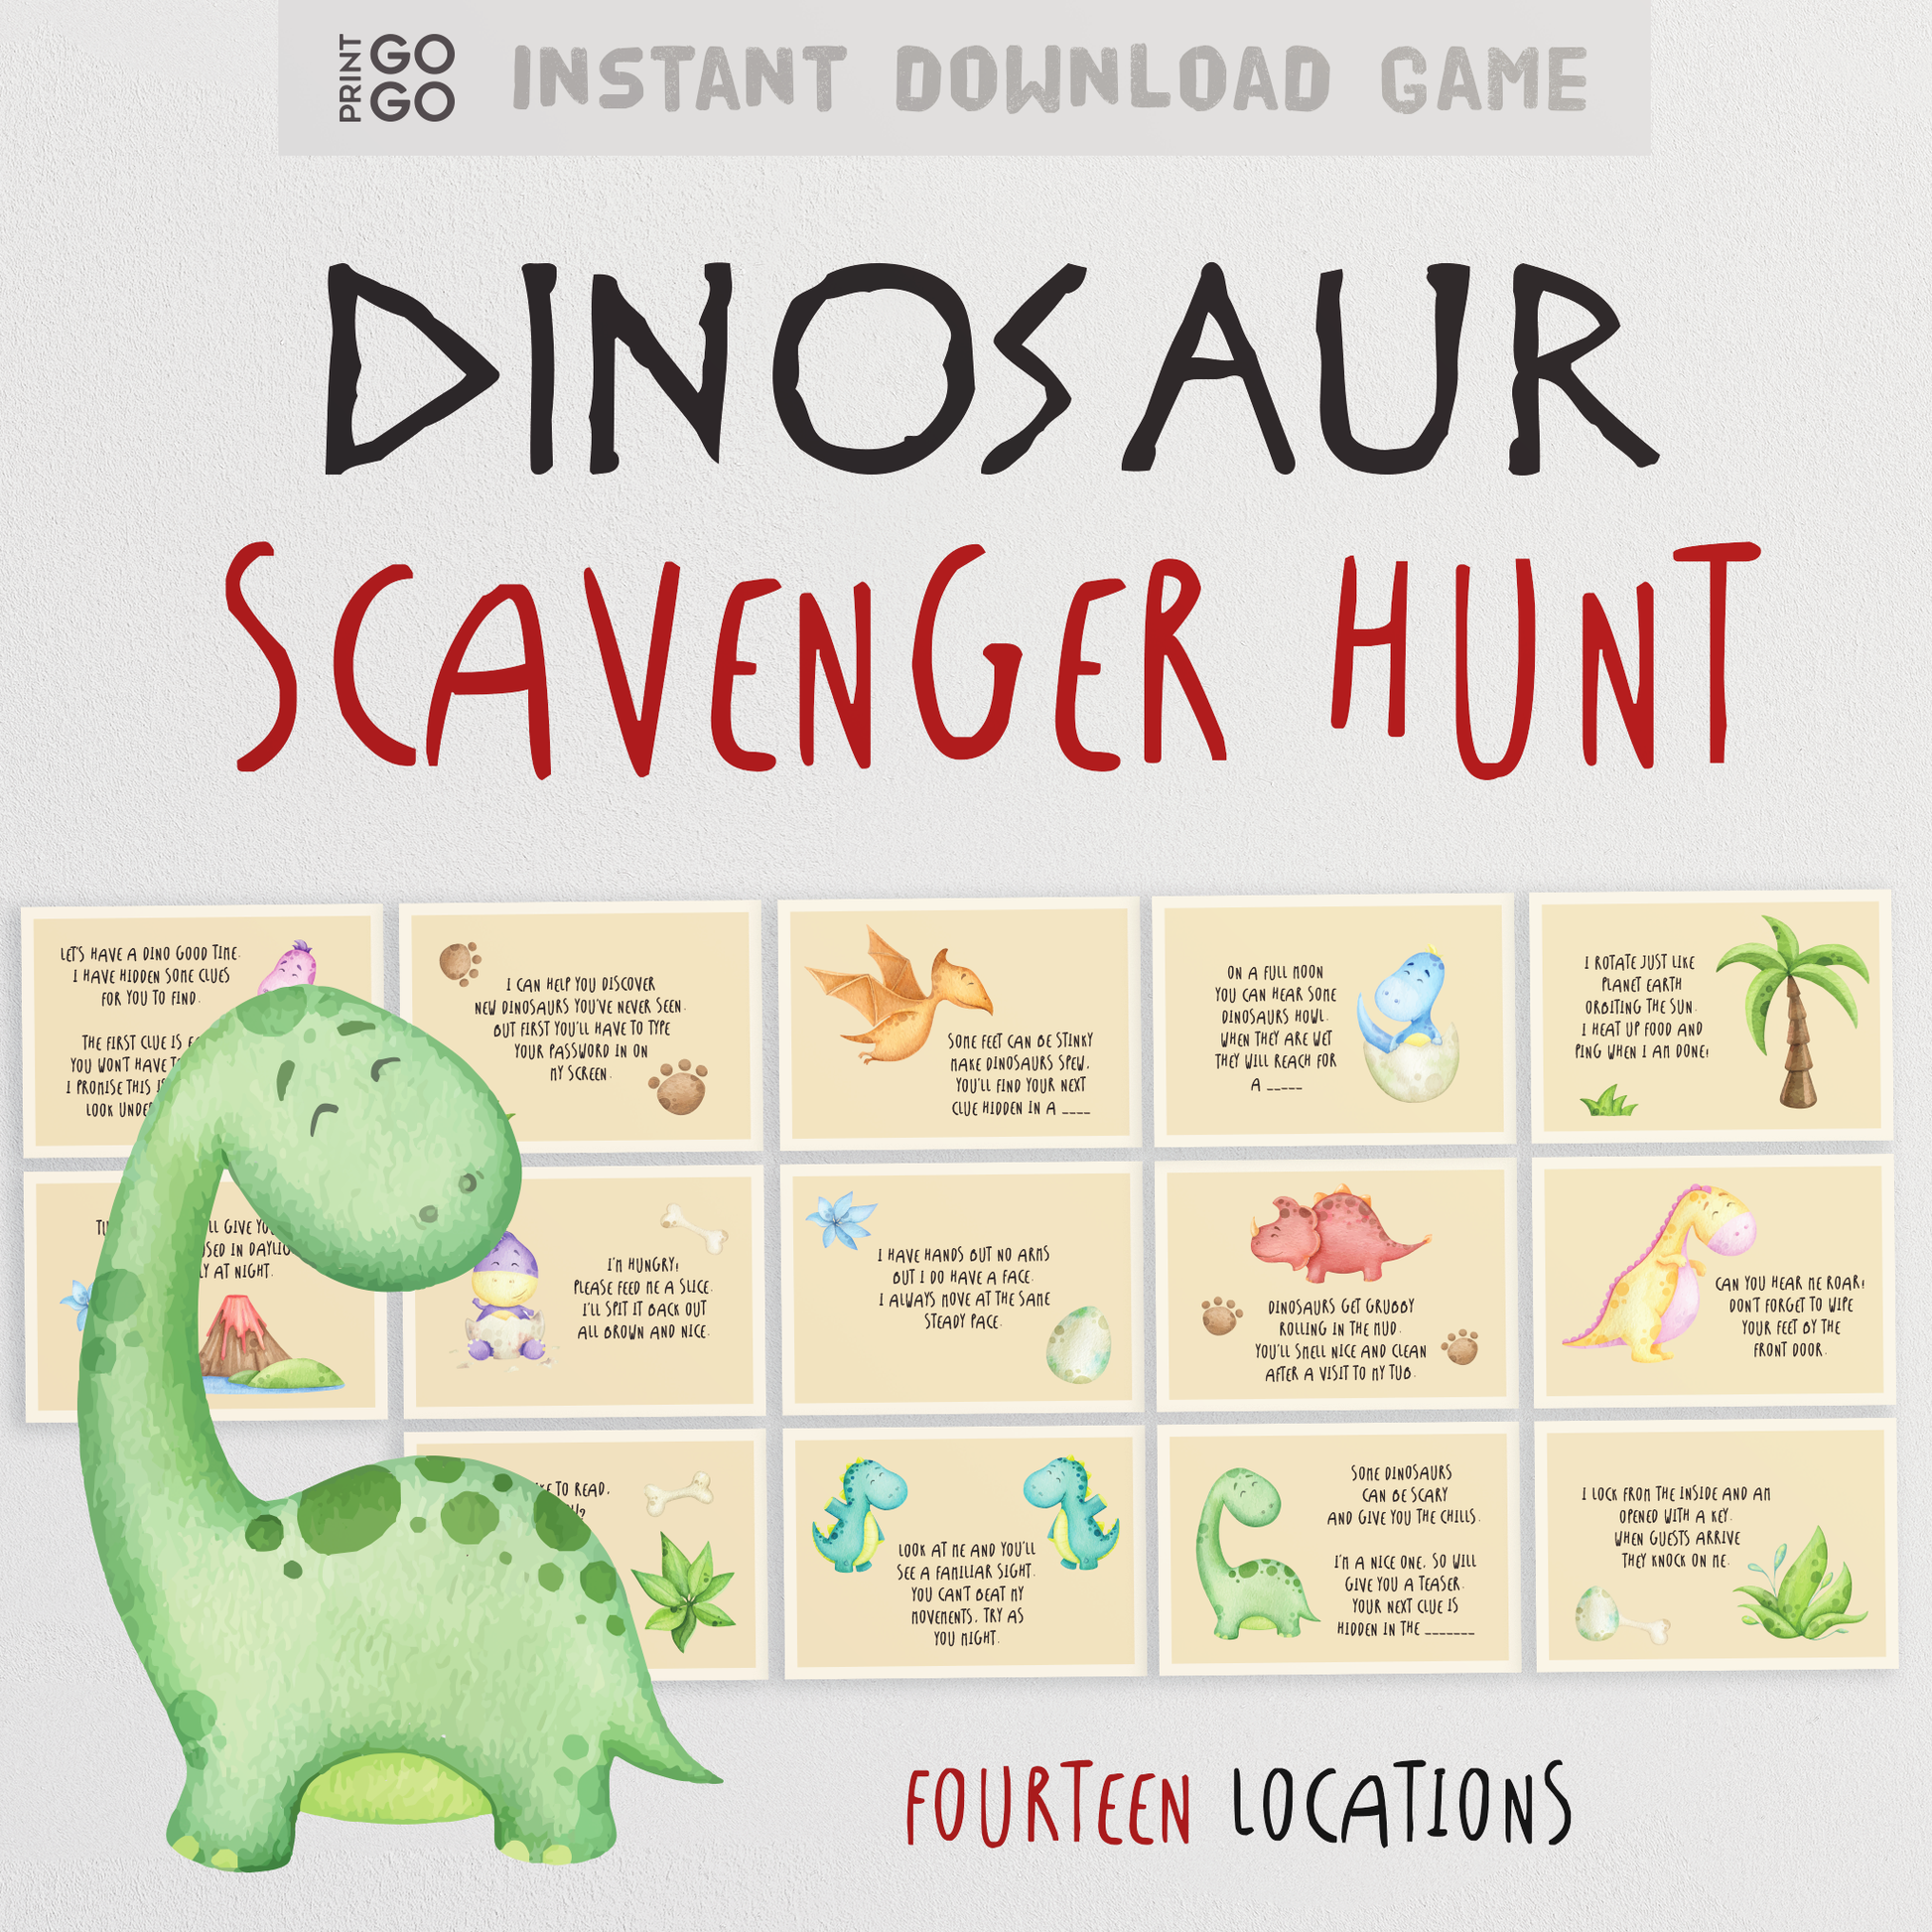 Dinosaur Scavenger Hunt for Kids - The Roaring Search for Hidden Treasures